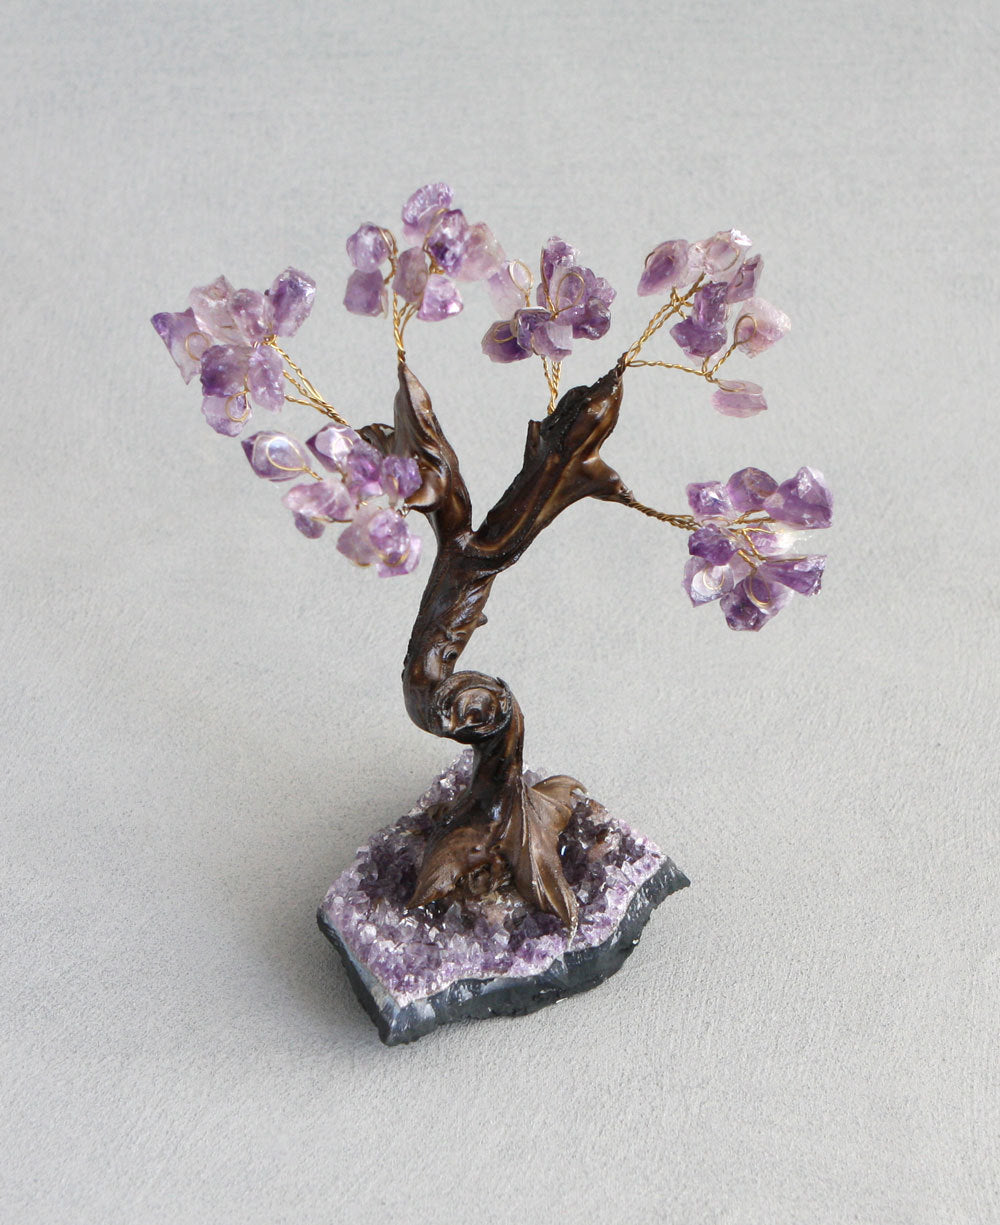 Amethyst Gemstone Bonsai Tree – Cultural Elements